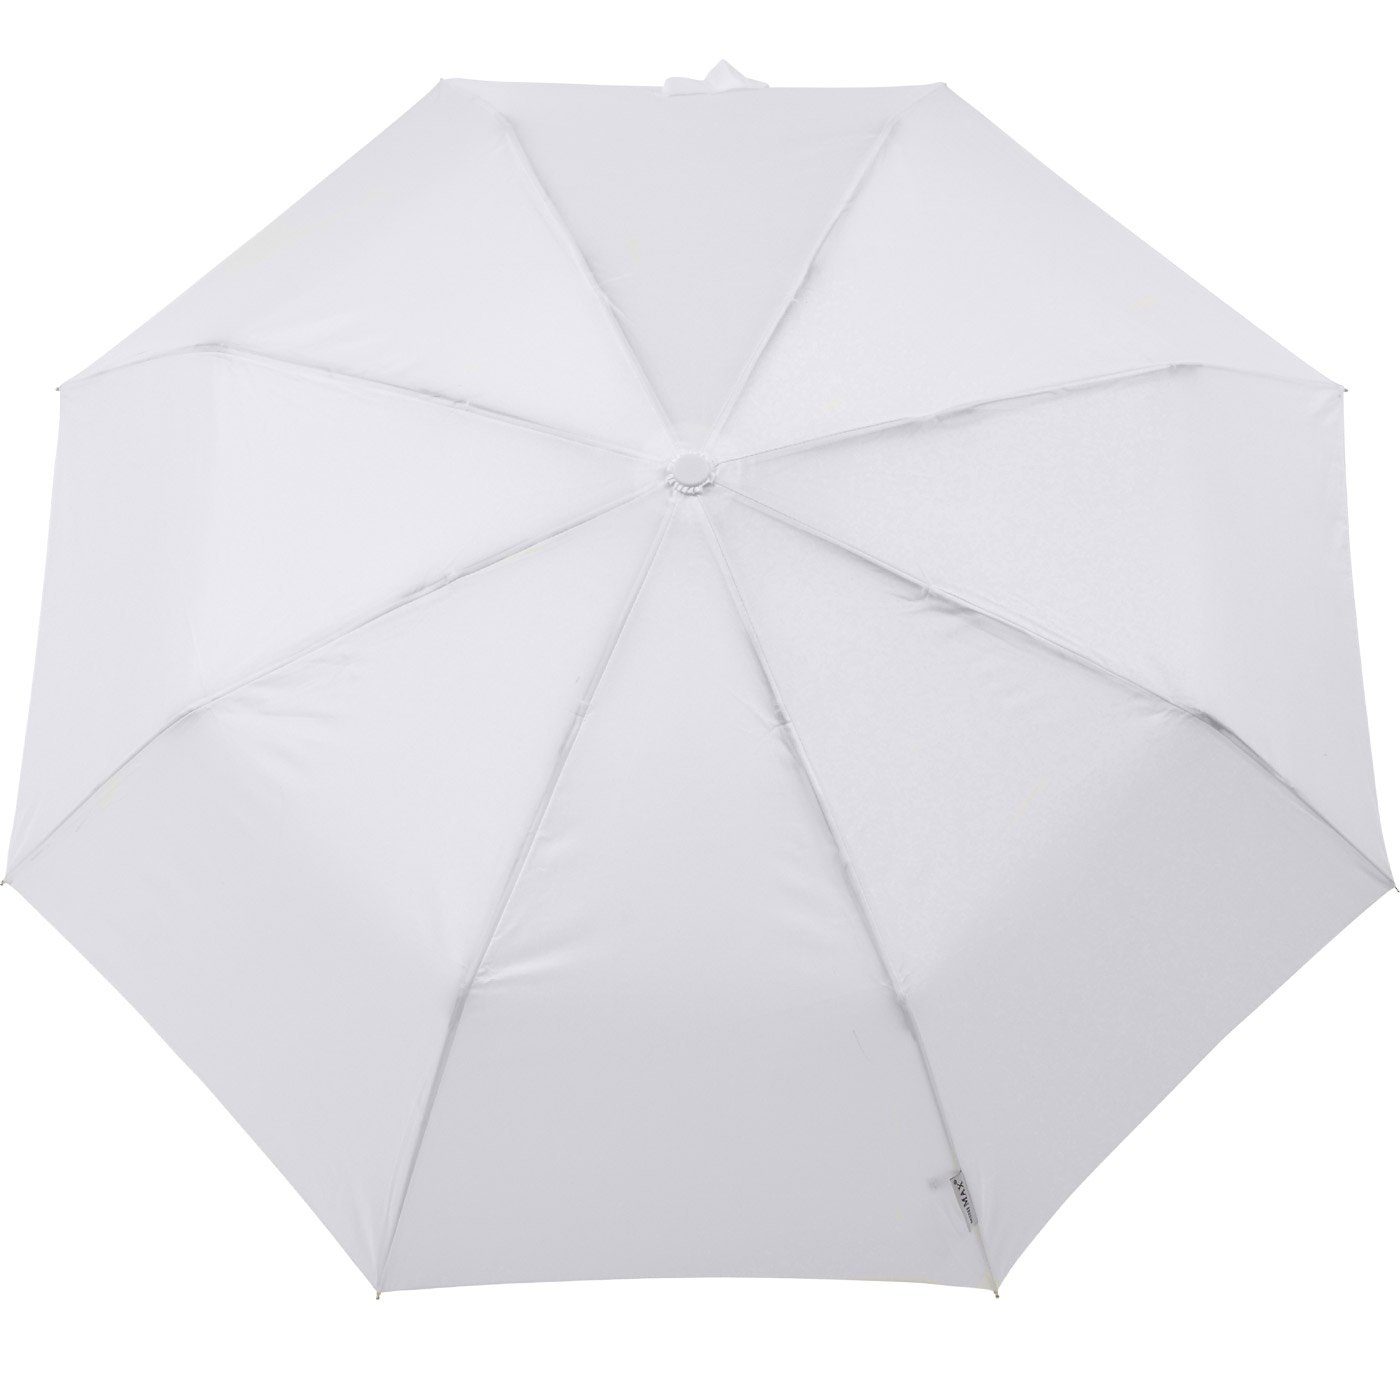 mit miniMAX® zuverlässige uni, Begleiter Taschenregenschirm windsicher Auf-Automatik Impliva weiß der